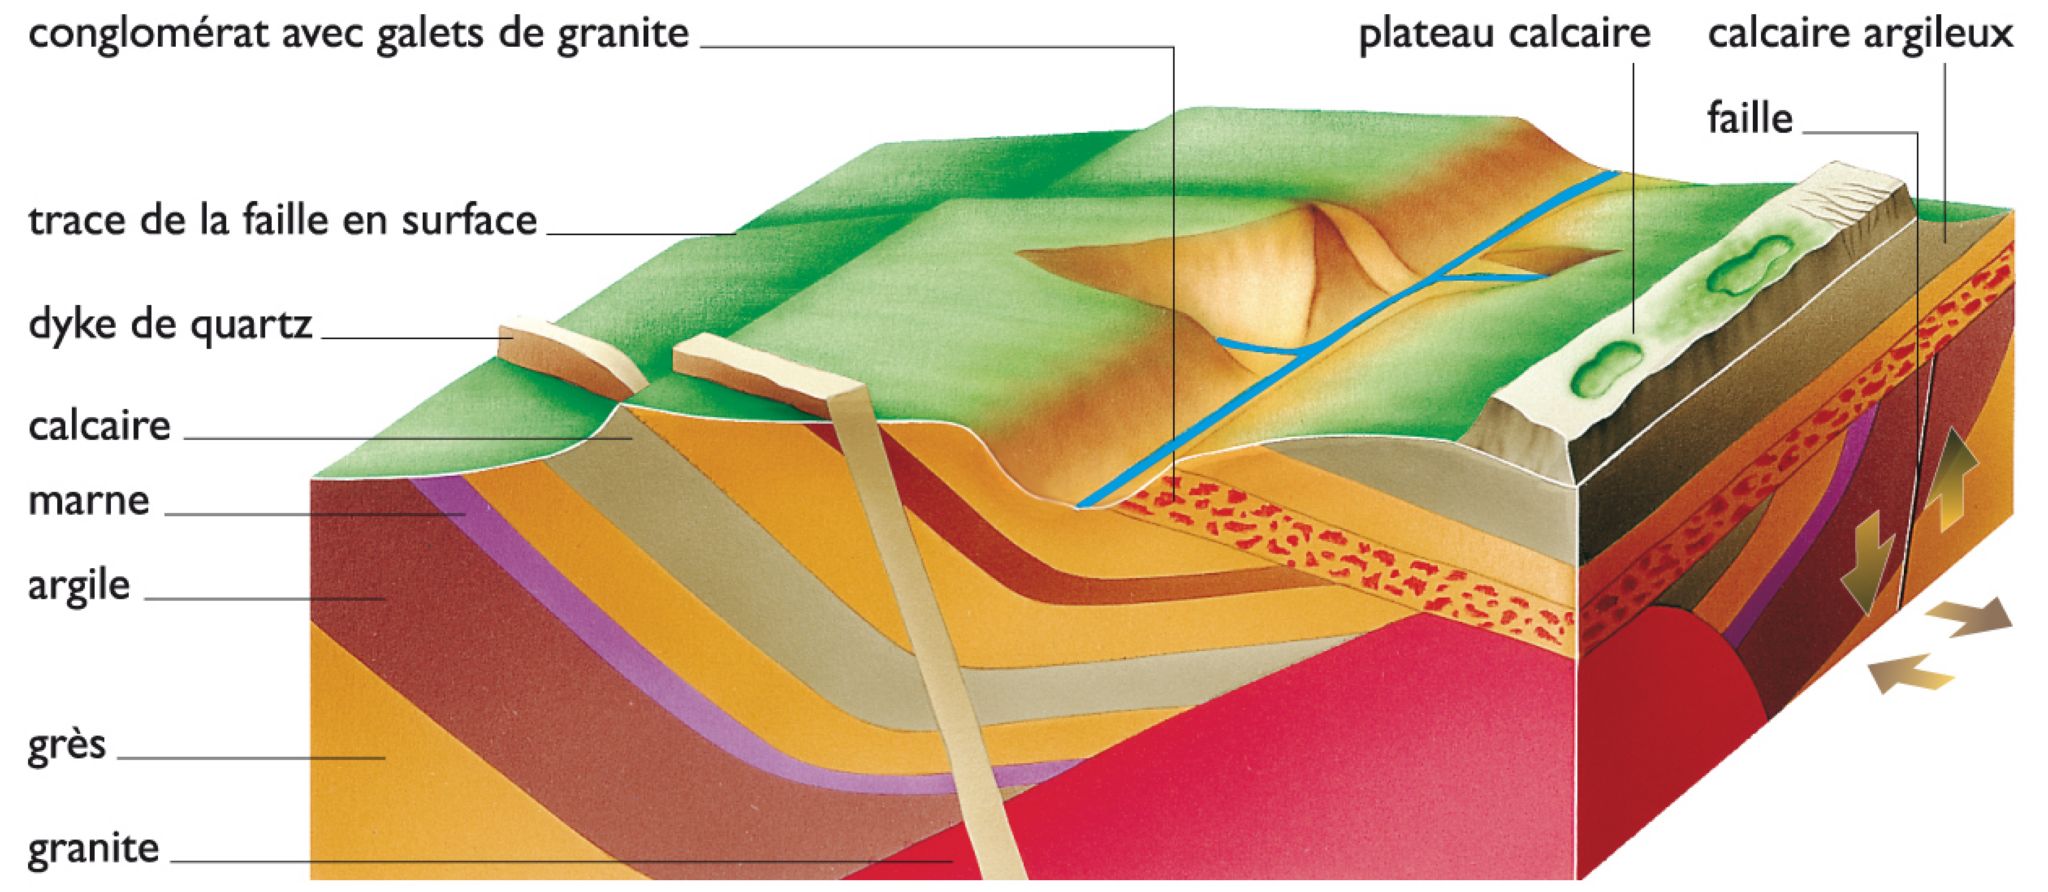 représentation d’une structure géologique (bloc-diagramme)